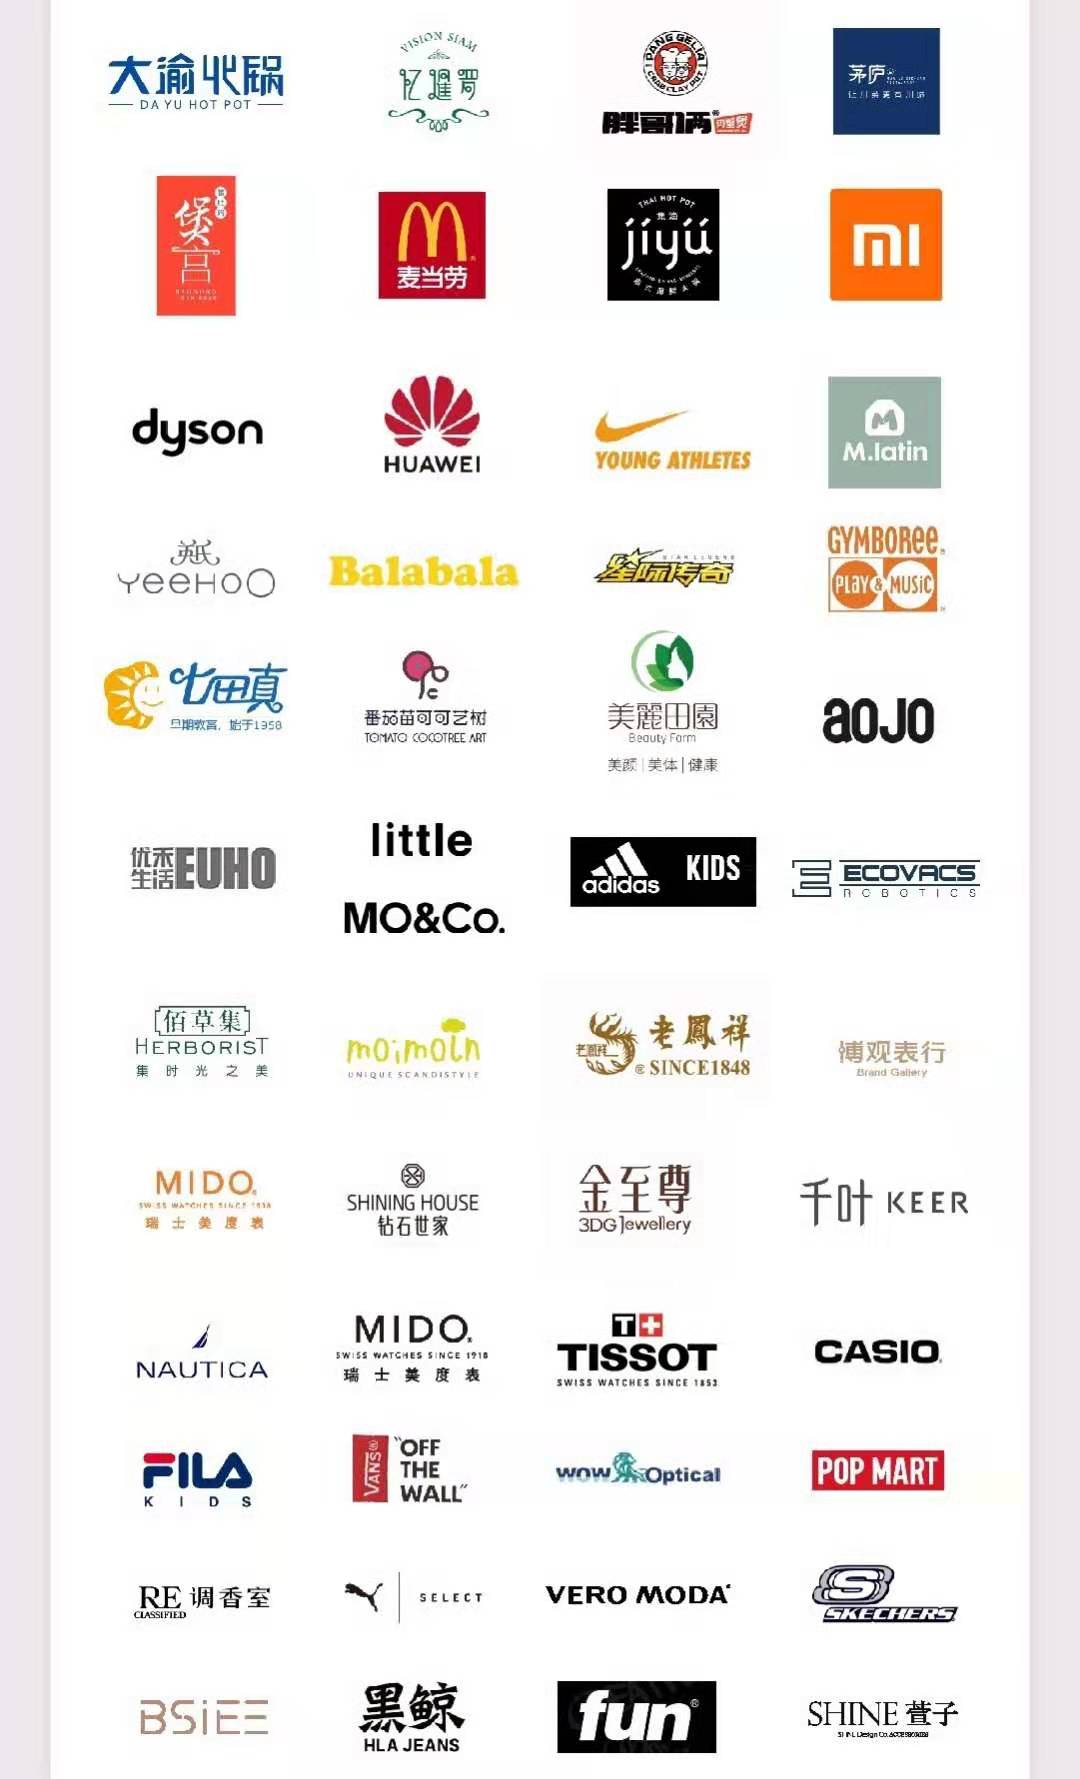 扬州万象汇品牌列表图片